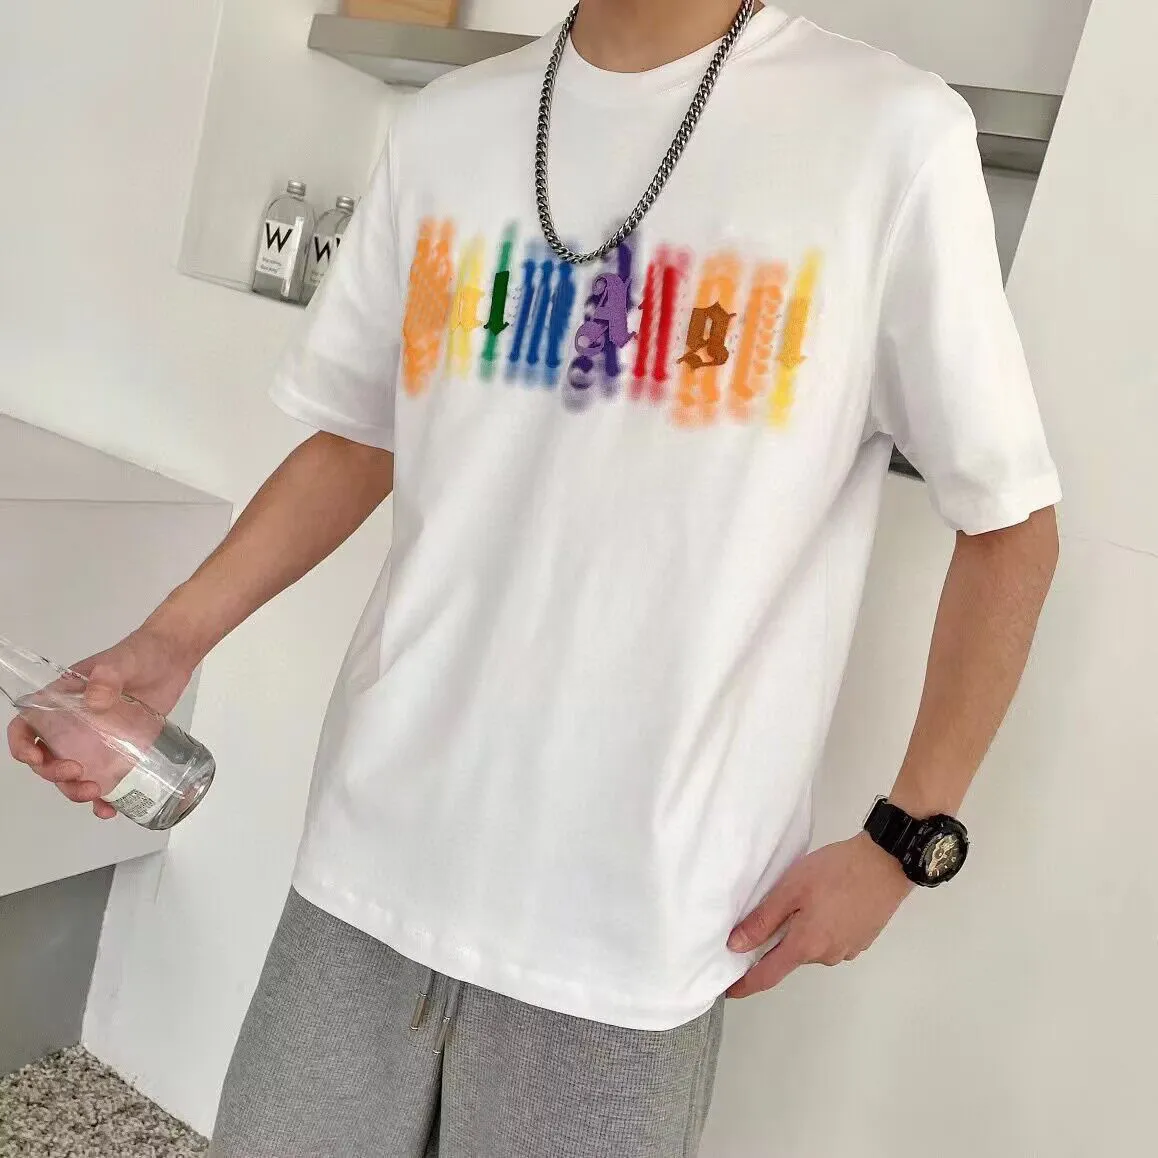 Мужская футболка с футболкой женские футболки дизайнер вышивающих букв.